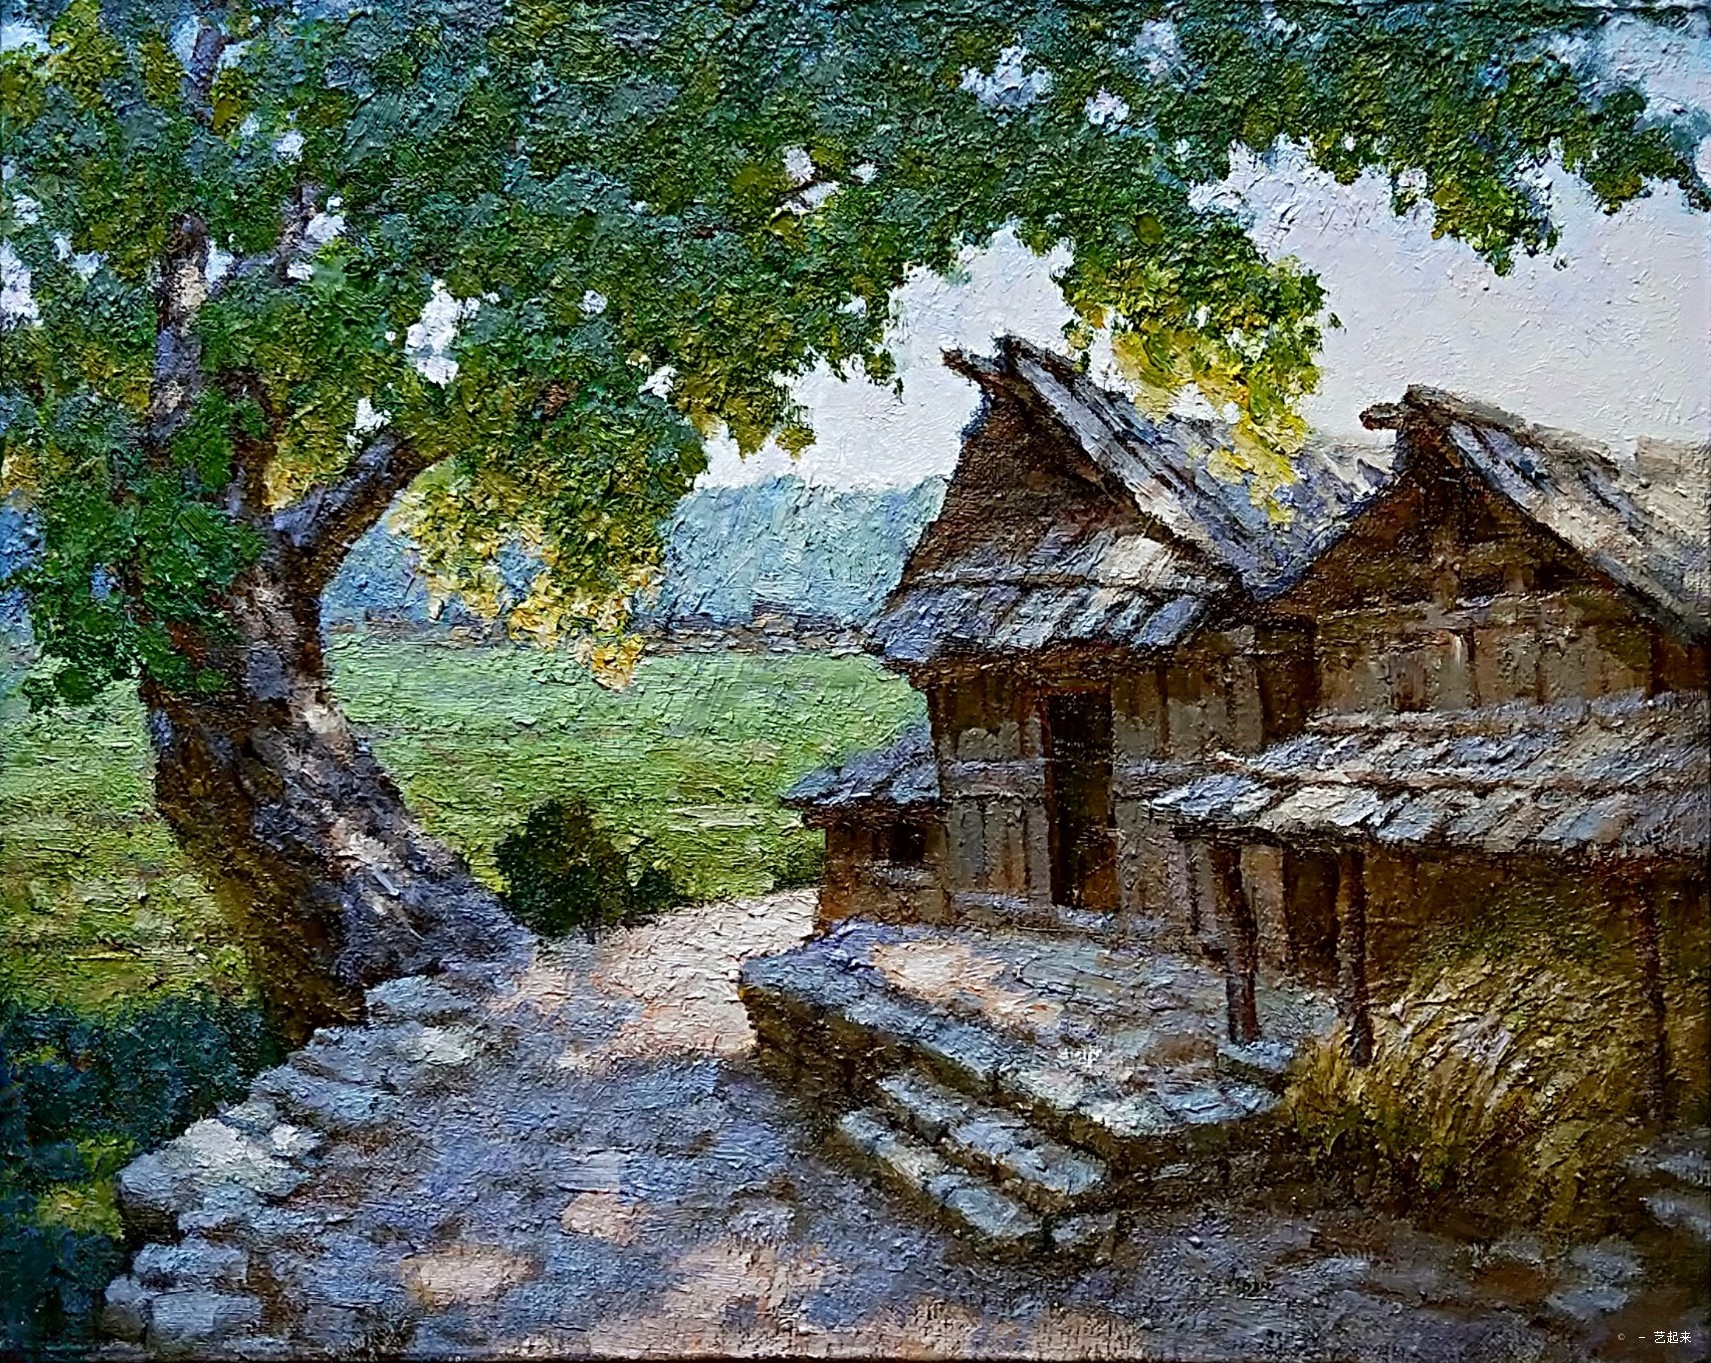 榕树下, 李平, 2014年布面油画 